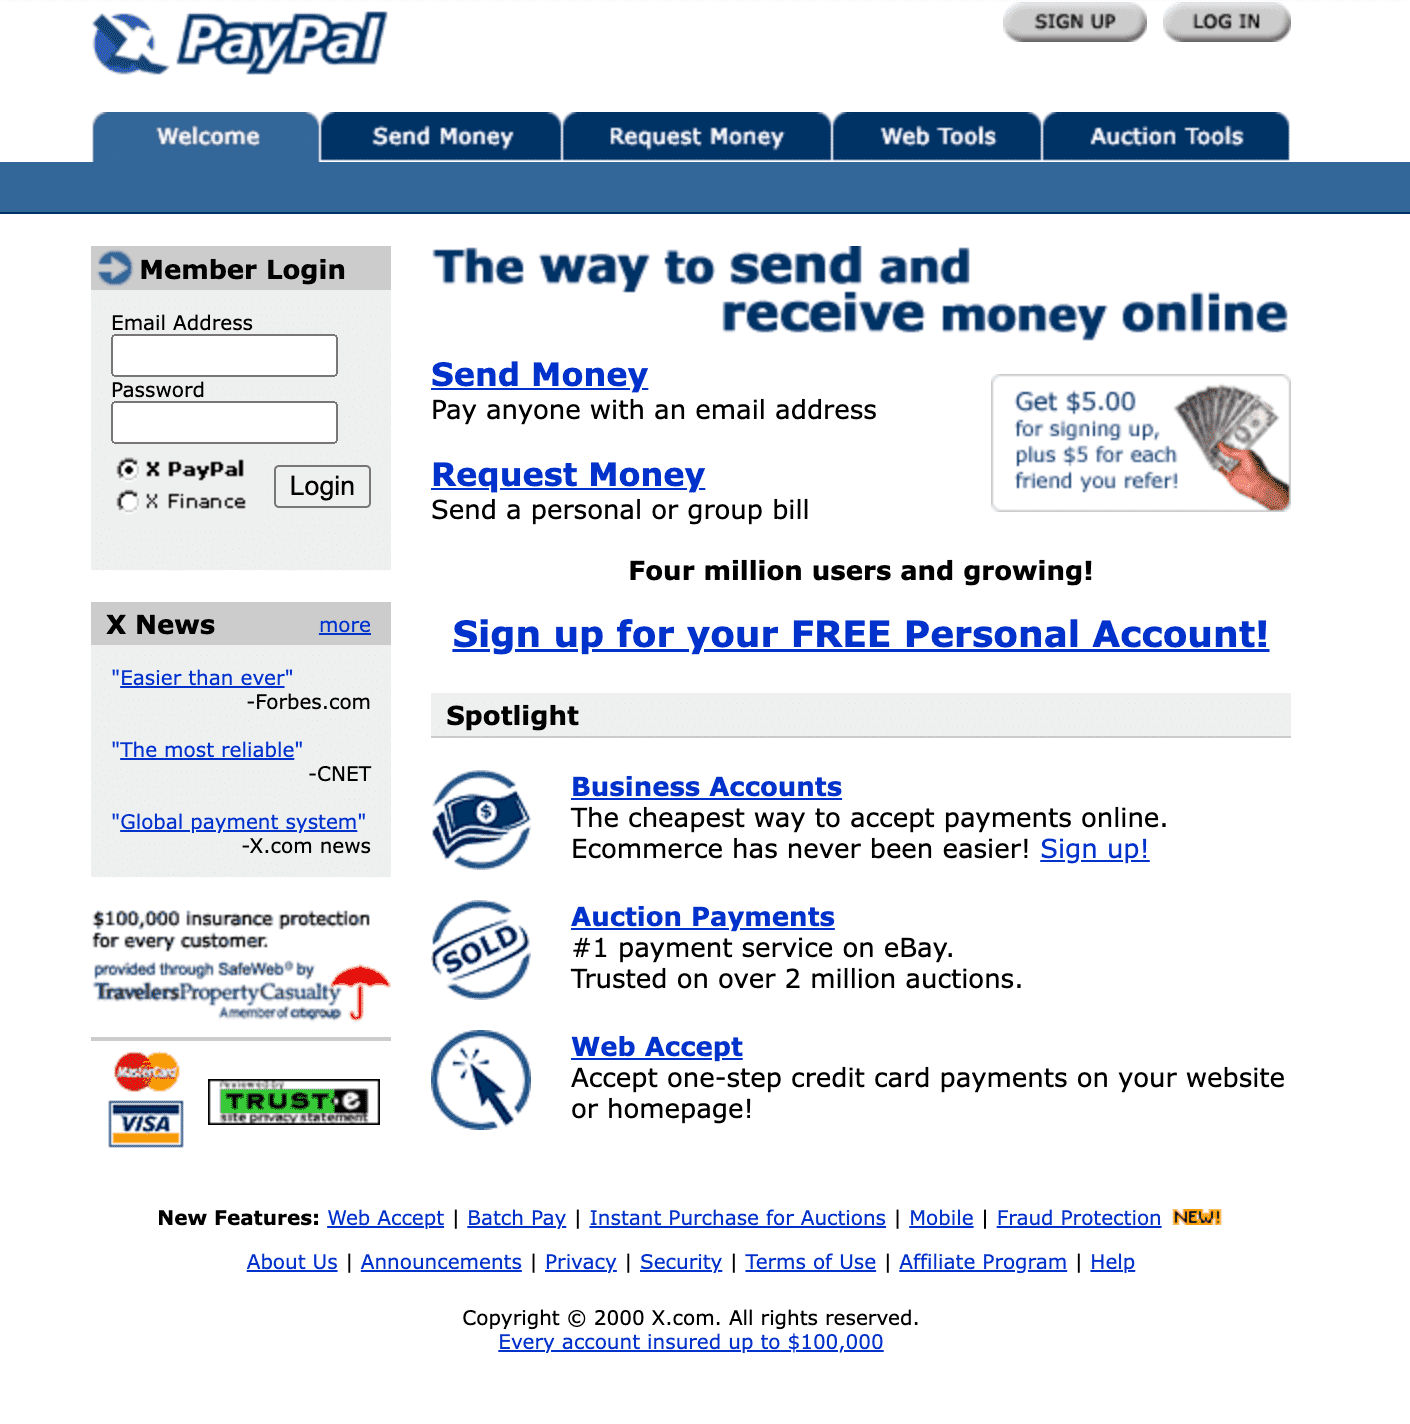 x.com in late 2000